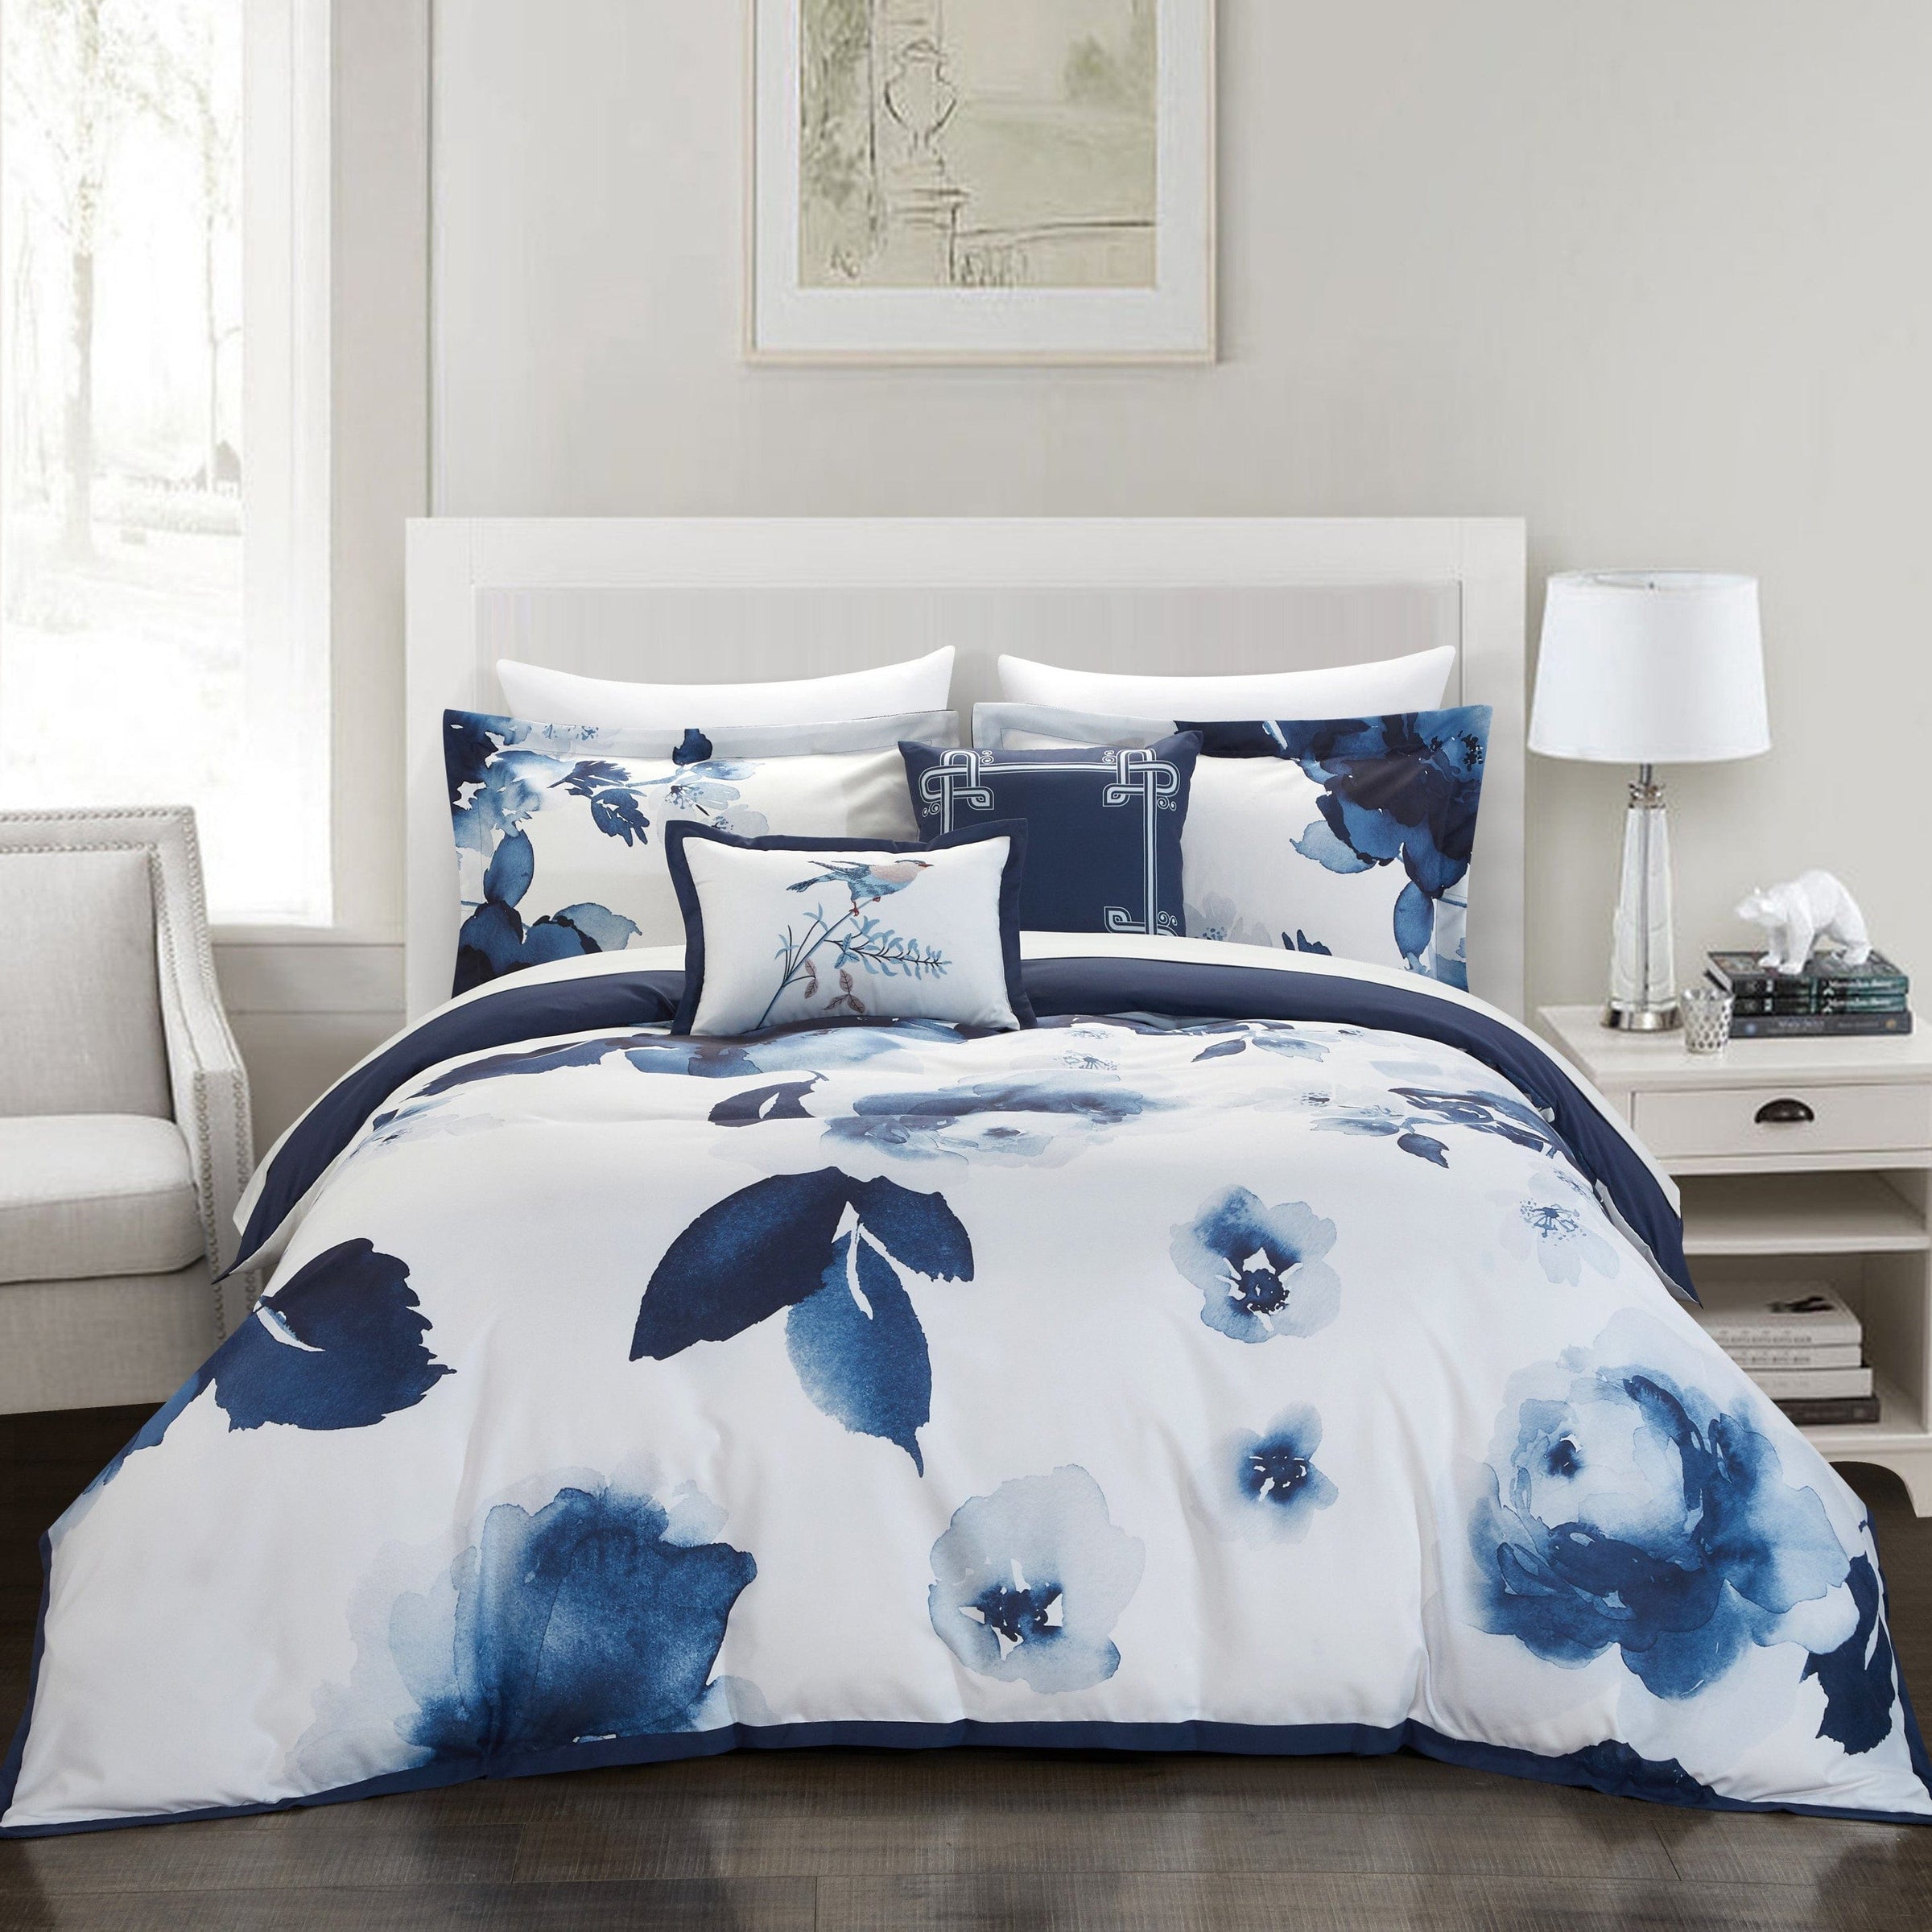 Hudson Floral Comforter Set - Canadian Bedding